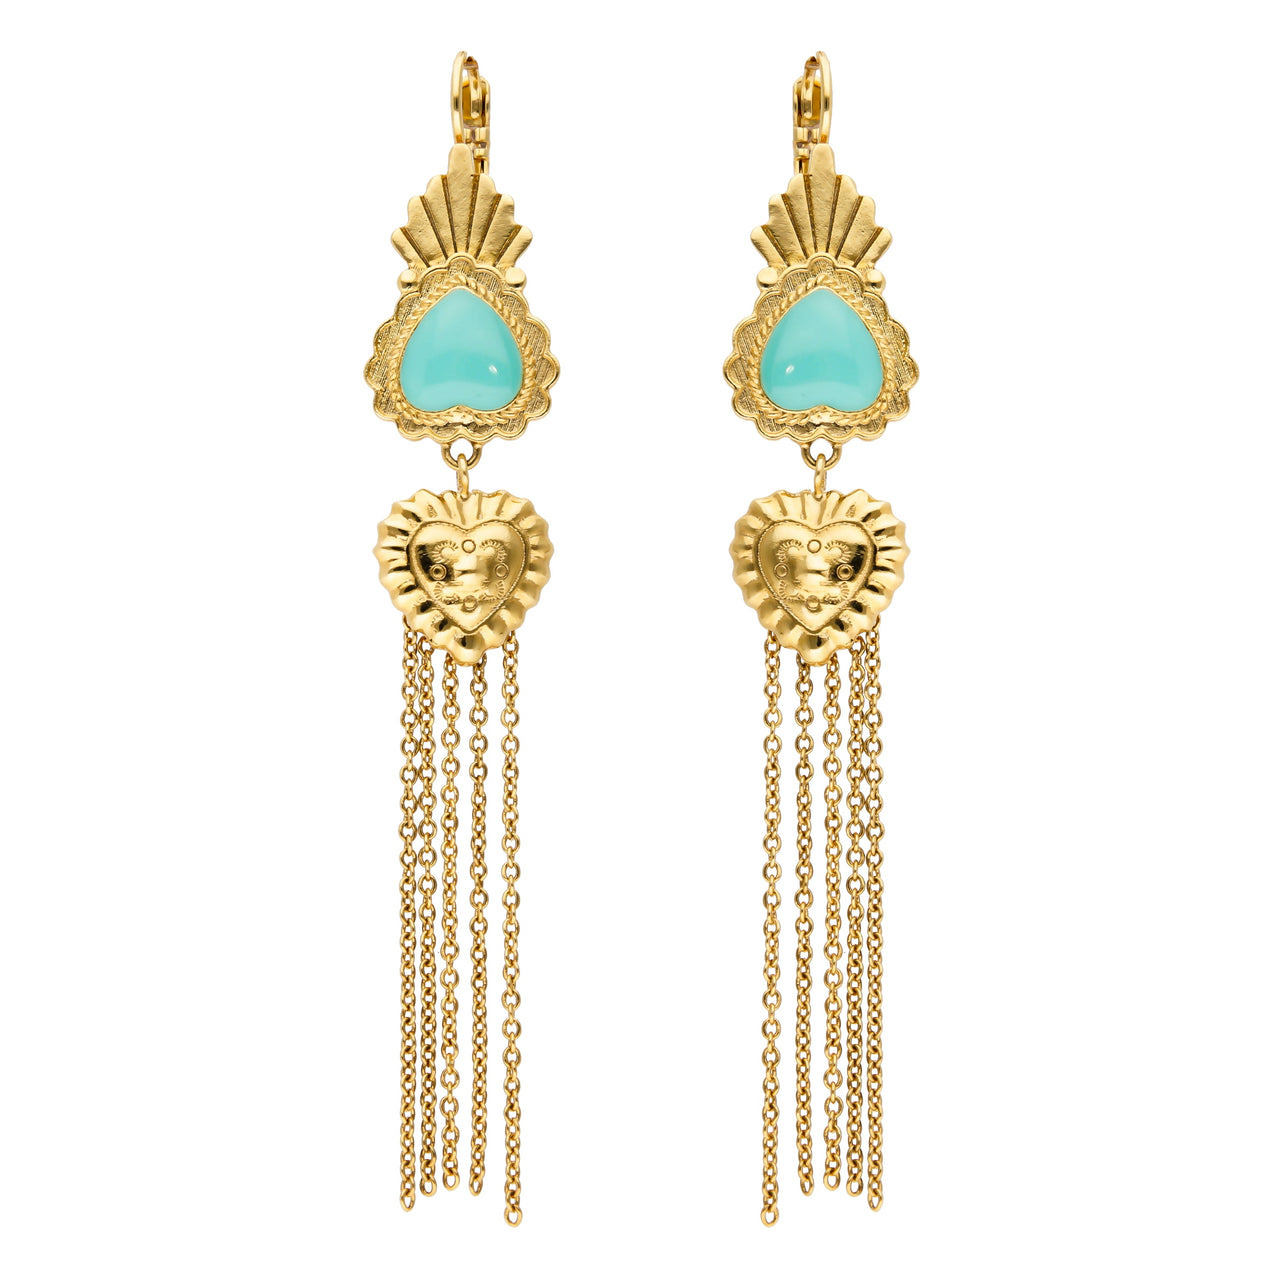 Valleya Turquoise Earrings